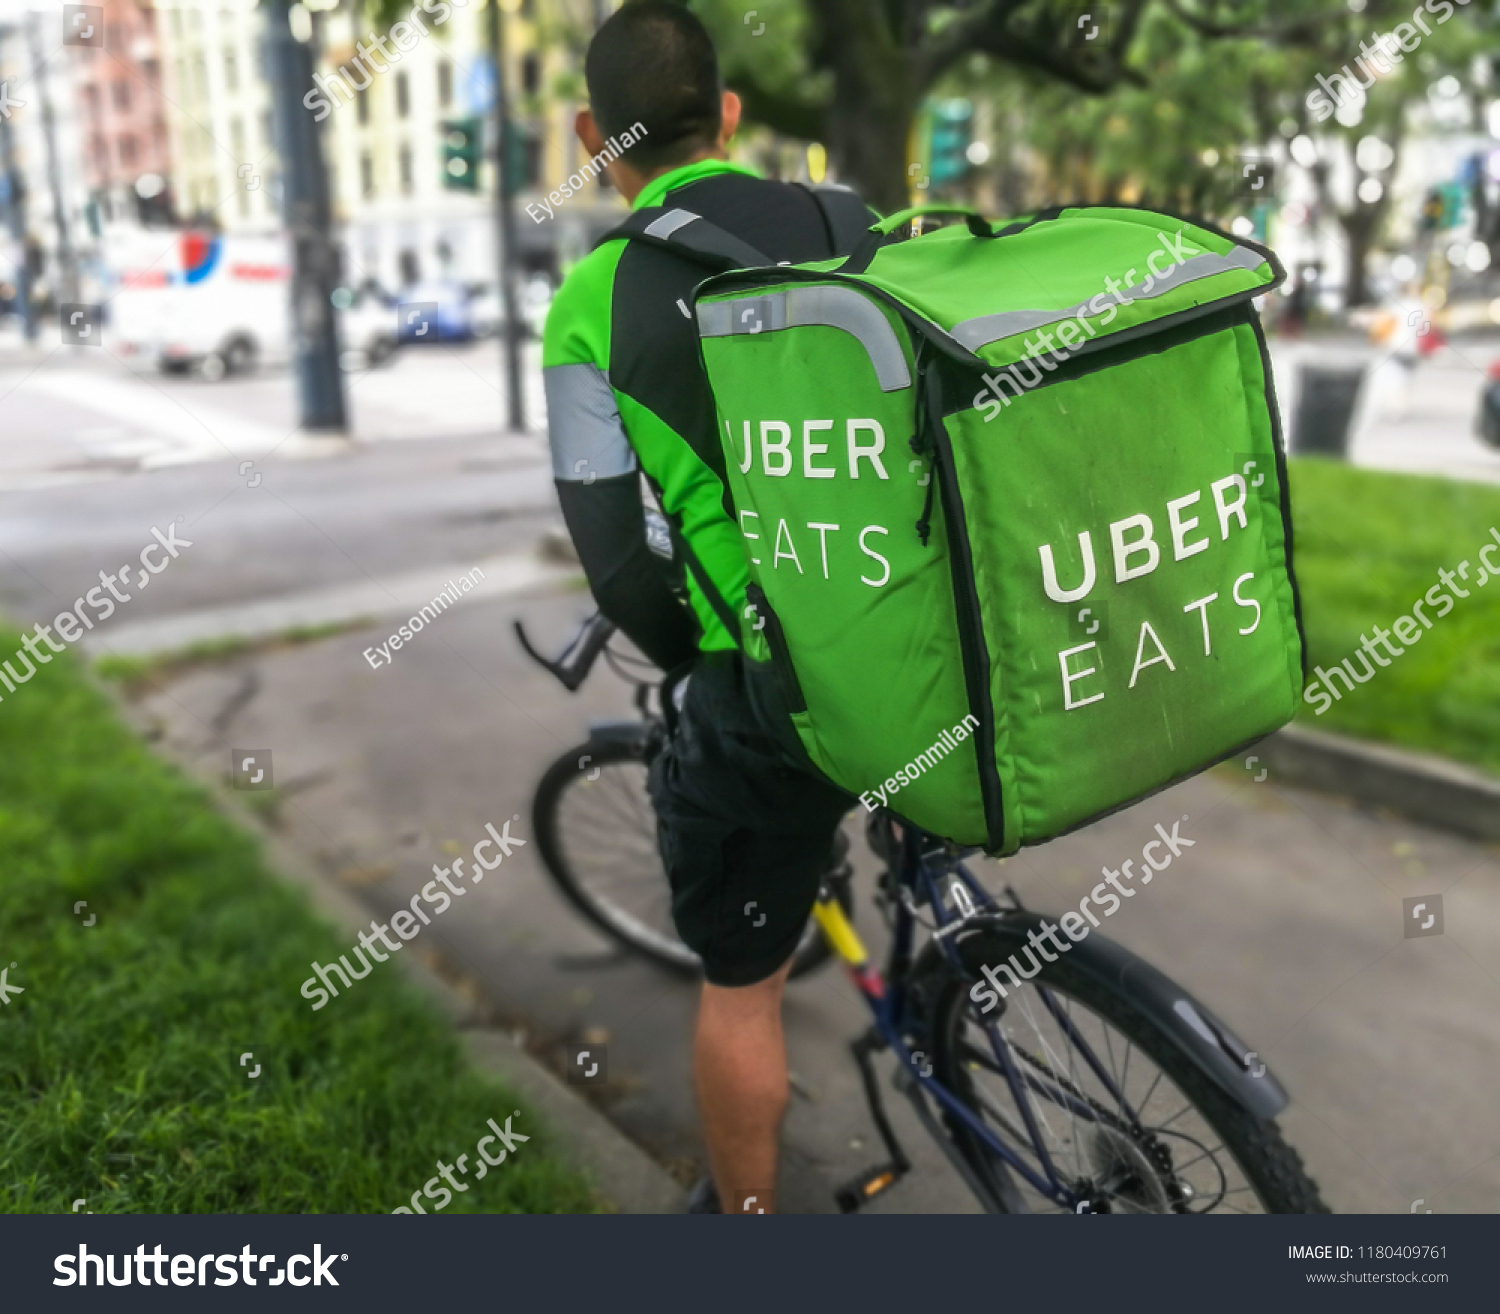 uber eats biker